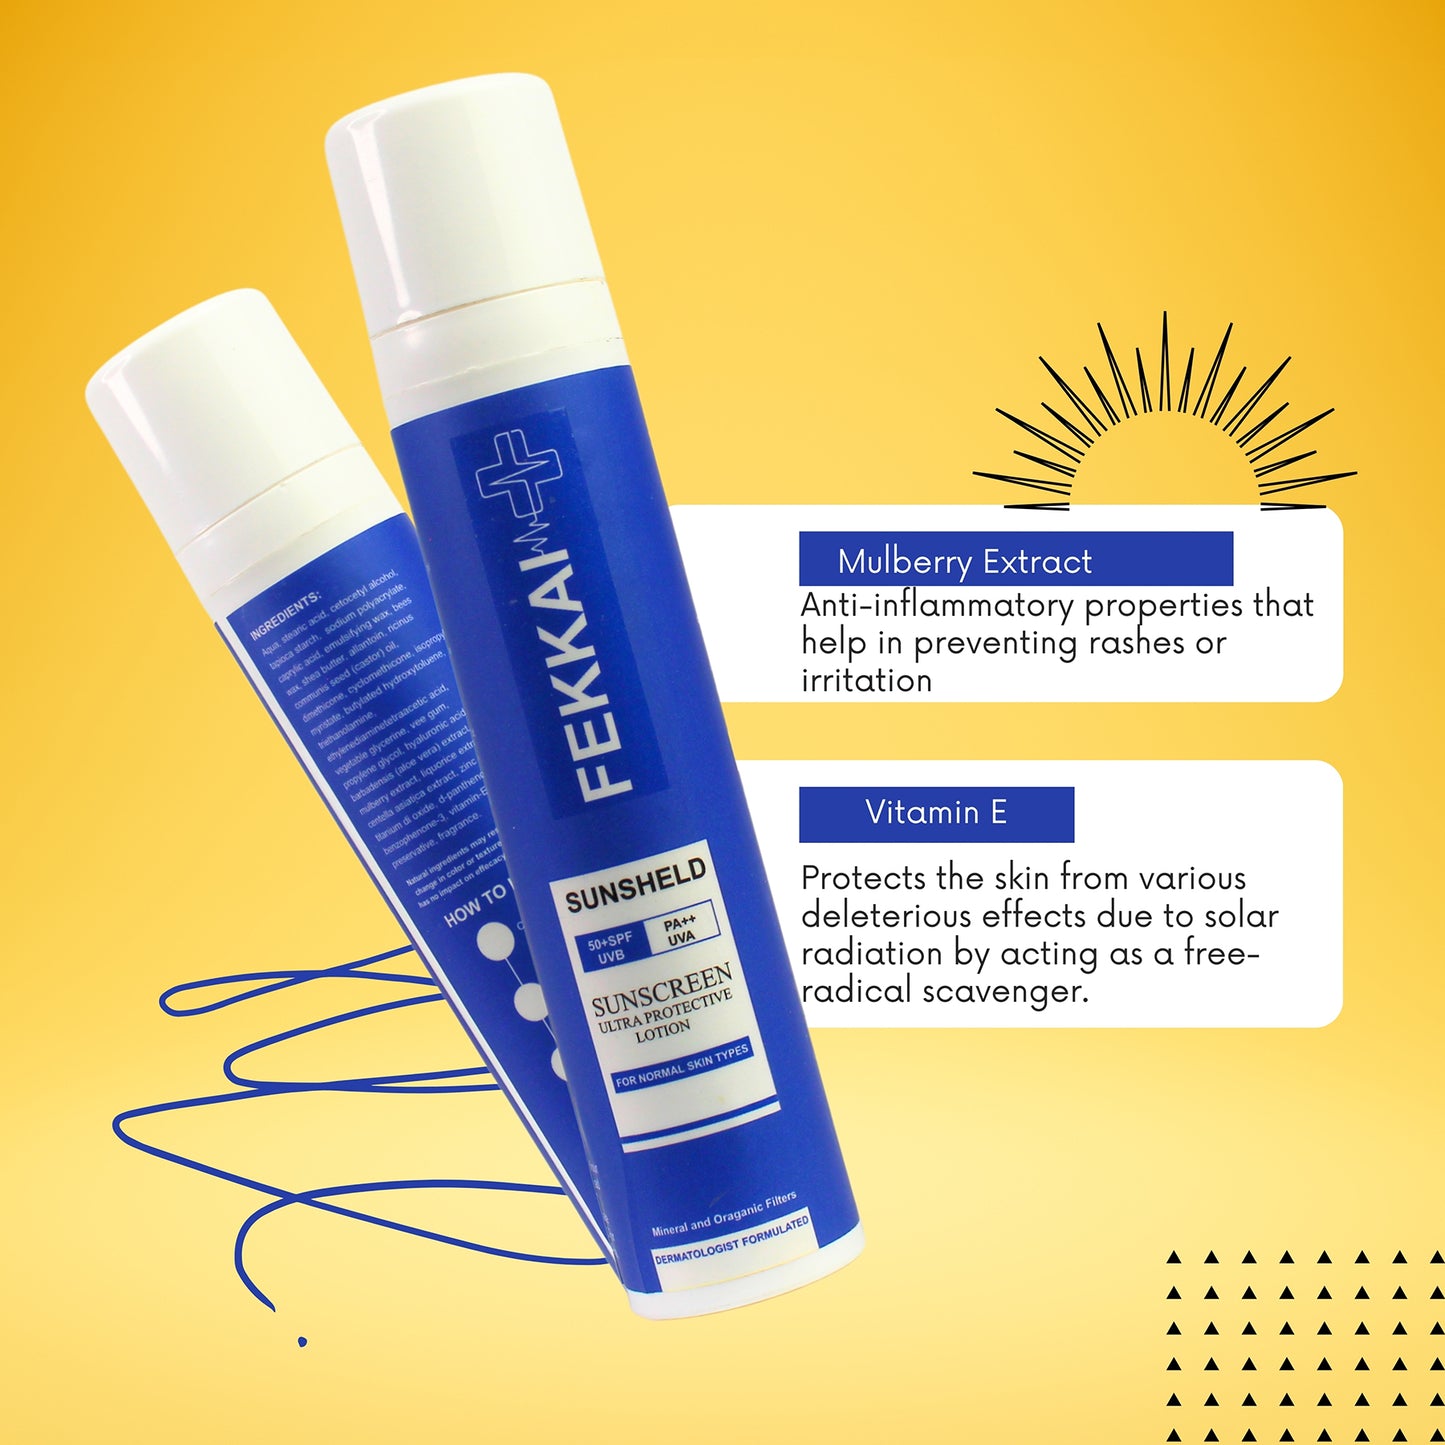 Fekkai Sunsheld Ultra Protective 100% Mineral-Based Sunscreen Spf 50 PA+++ For All Skin Types, 50gm